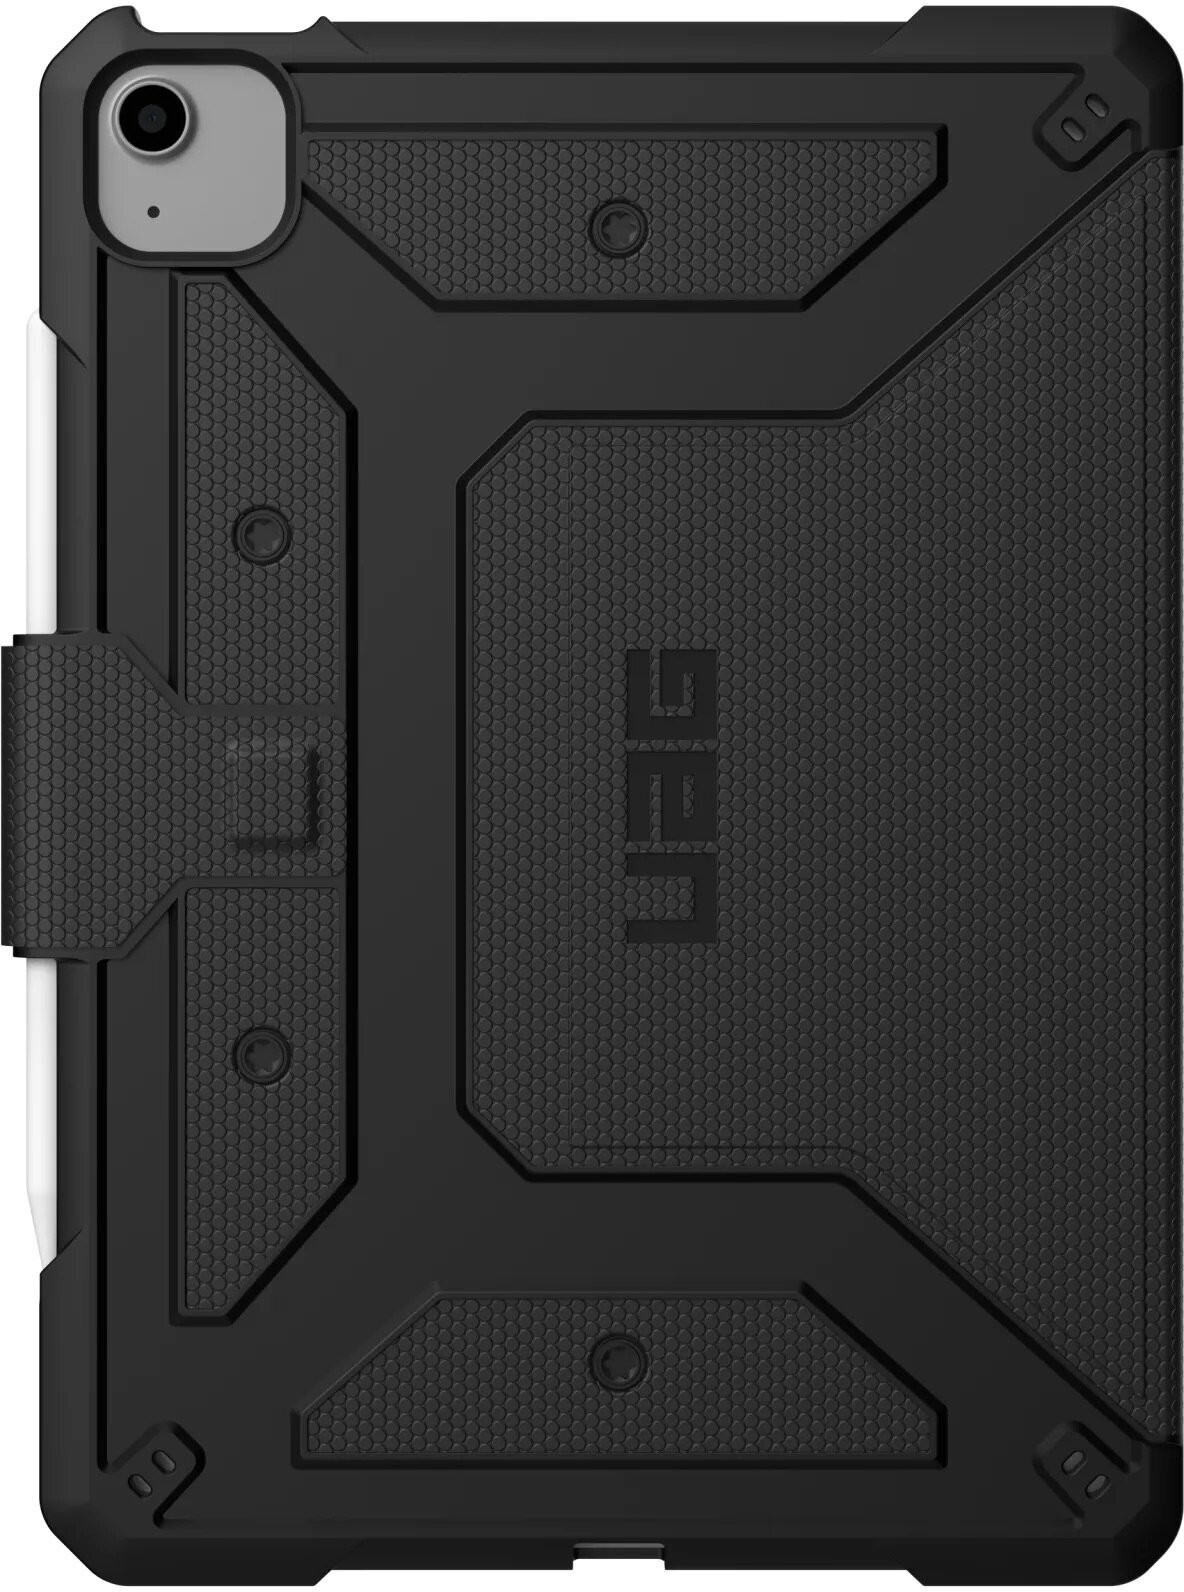 Защитный чехол UAG Metropolis для iPad Air (4-го и 5-го поколений; 2020 и 2022) и iPad Pro 11 дюймов (2-го и 3-го поколений; 2020 и 2021) (дизайн 2022) (Чёрный / Black)